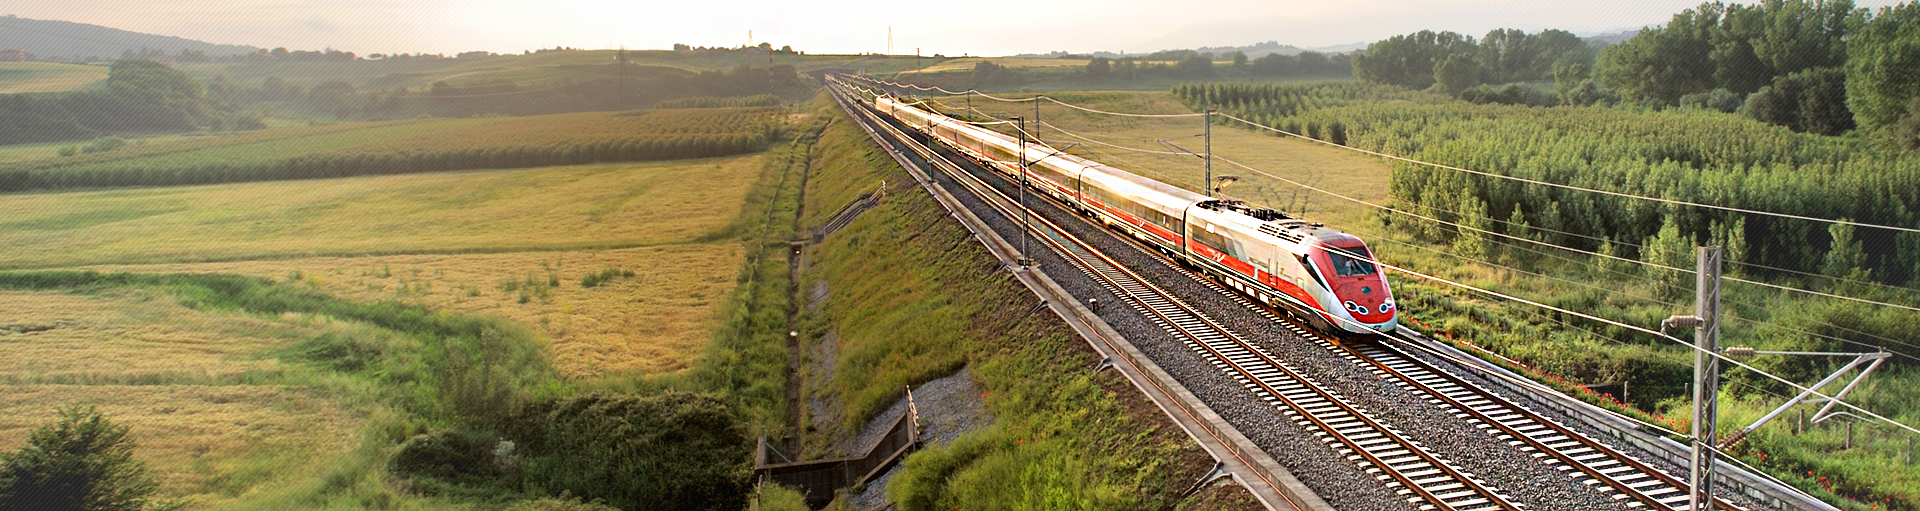 testate/Tecnoteam-italia-attrezzature-settore-ferroviario-04.jpg